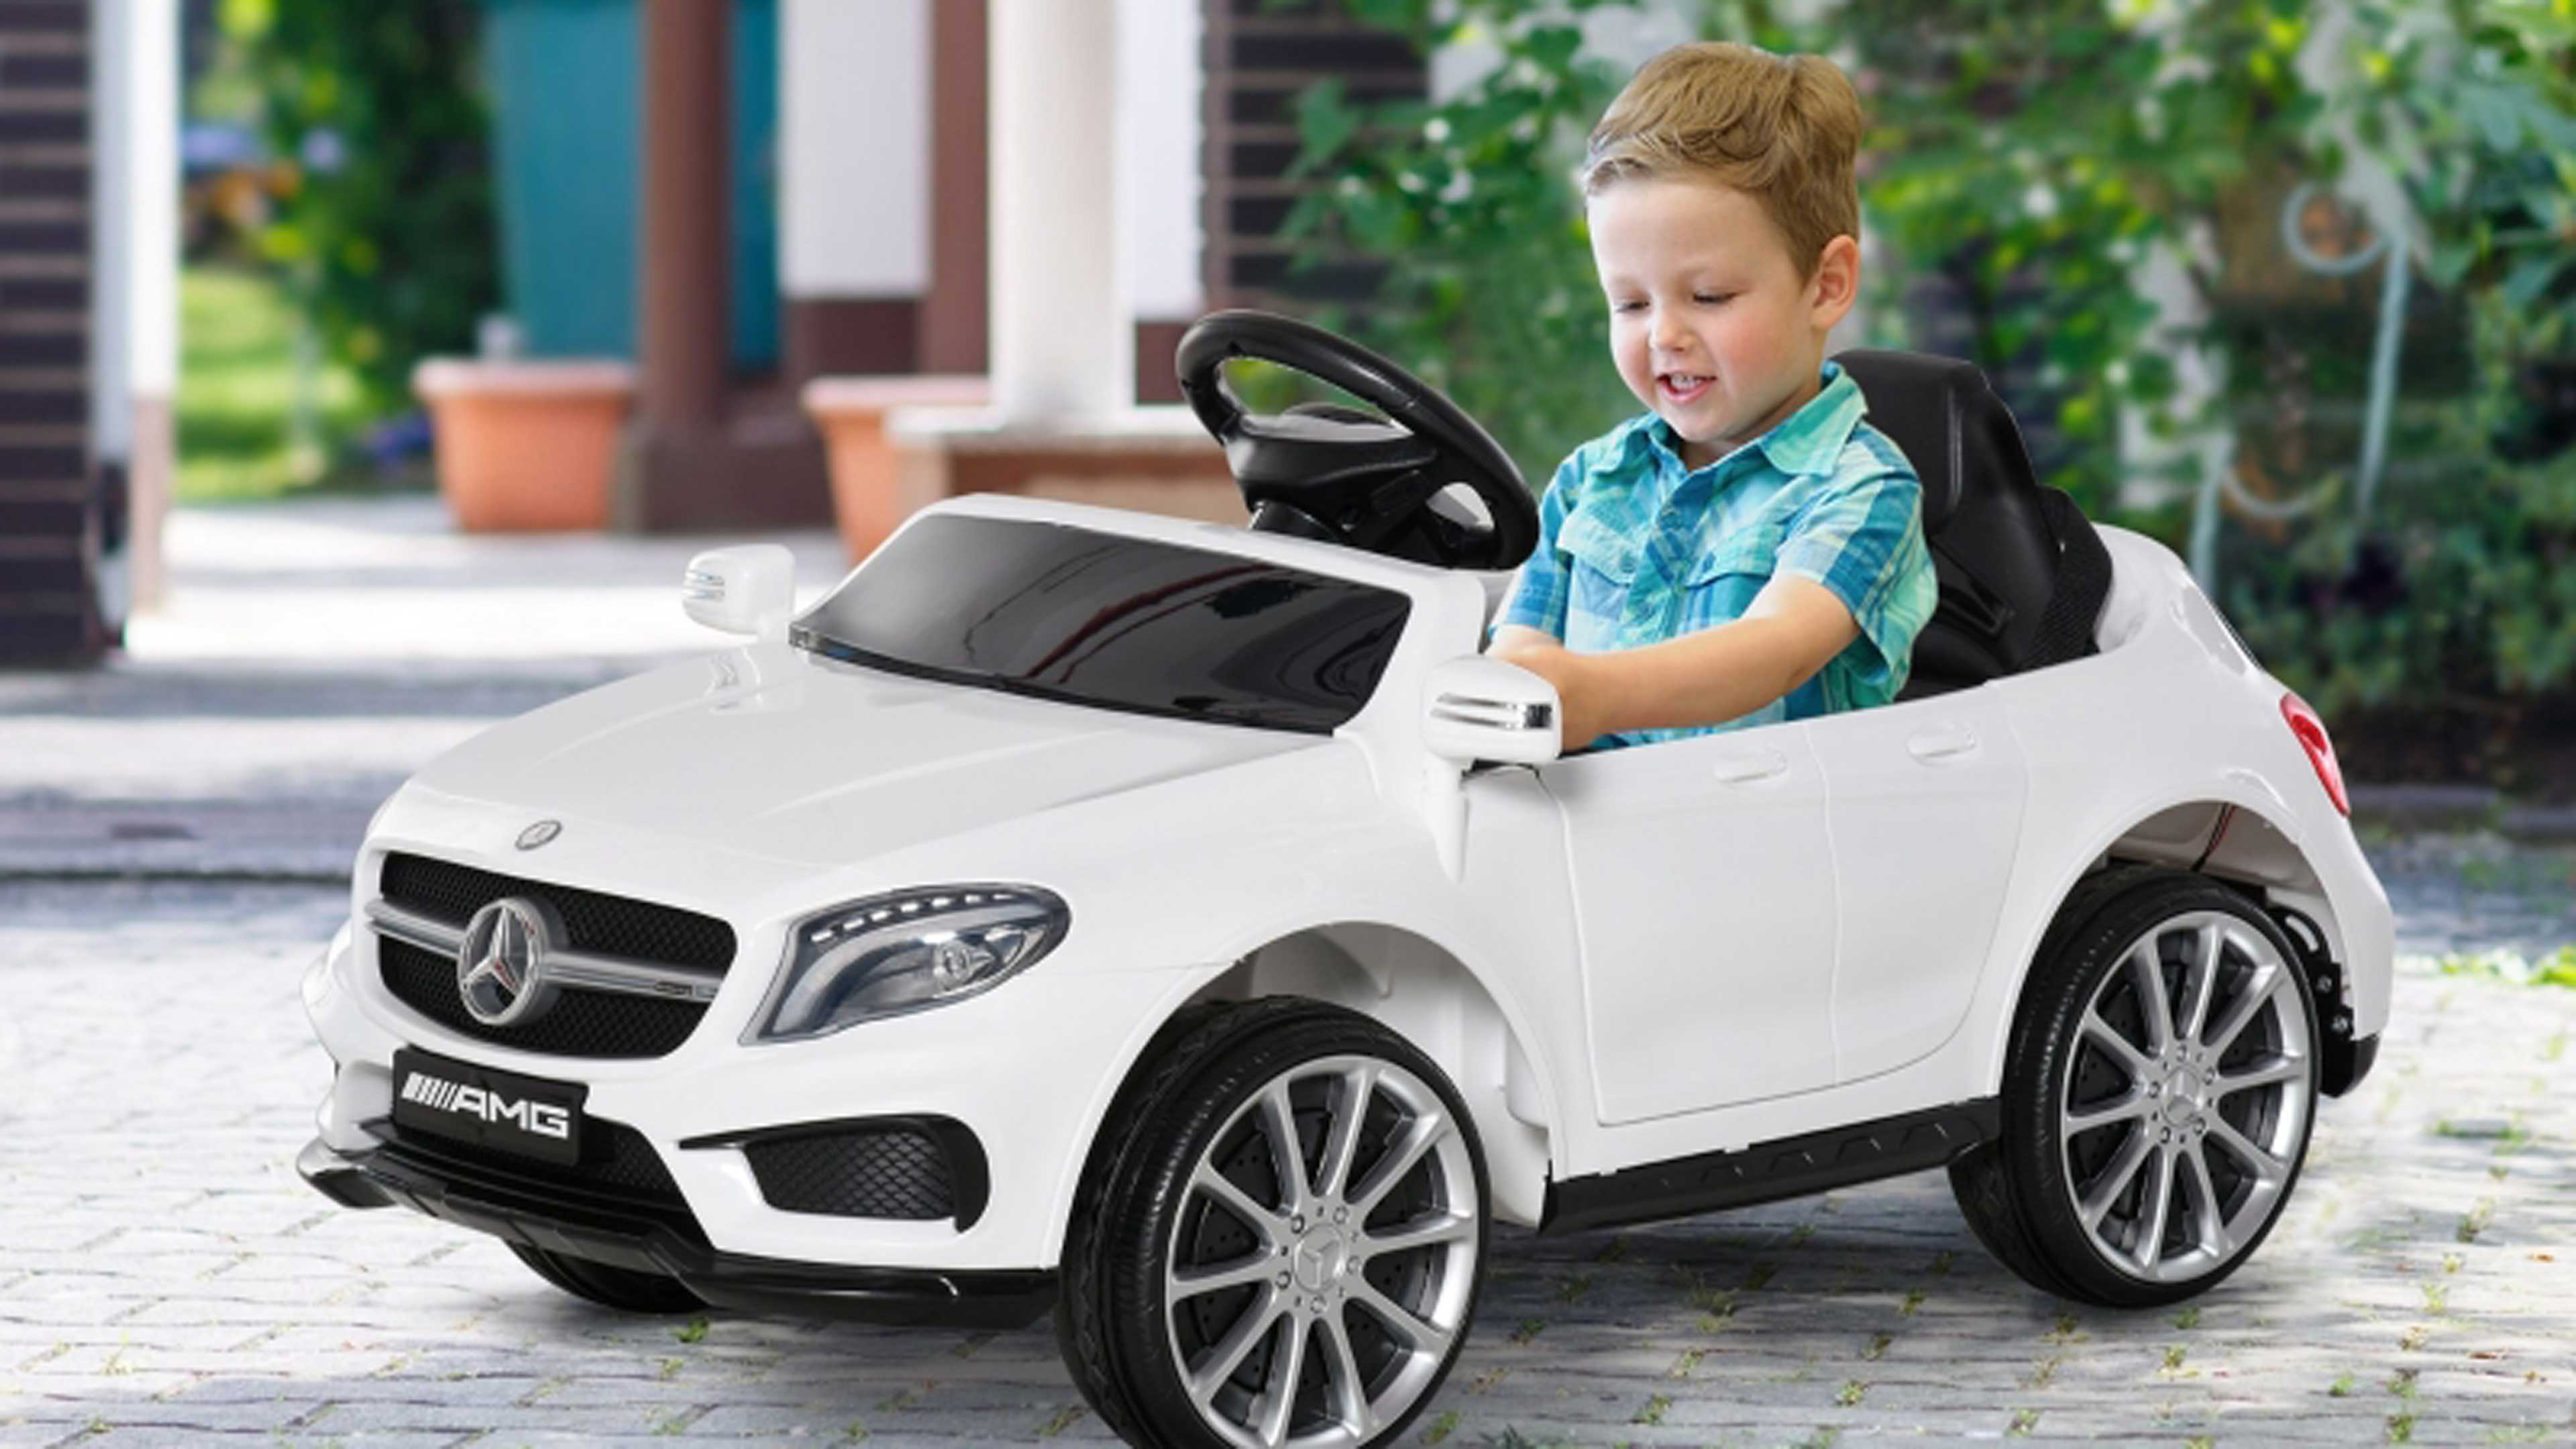 Este coche eléctrico para niños no es ningún juguete